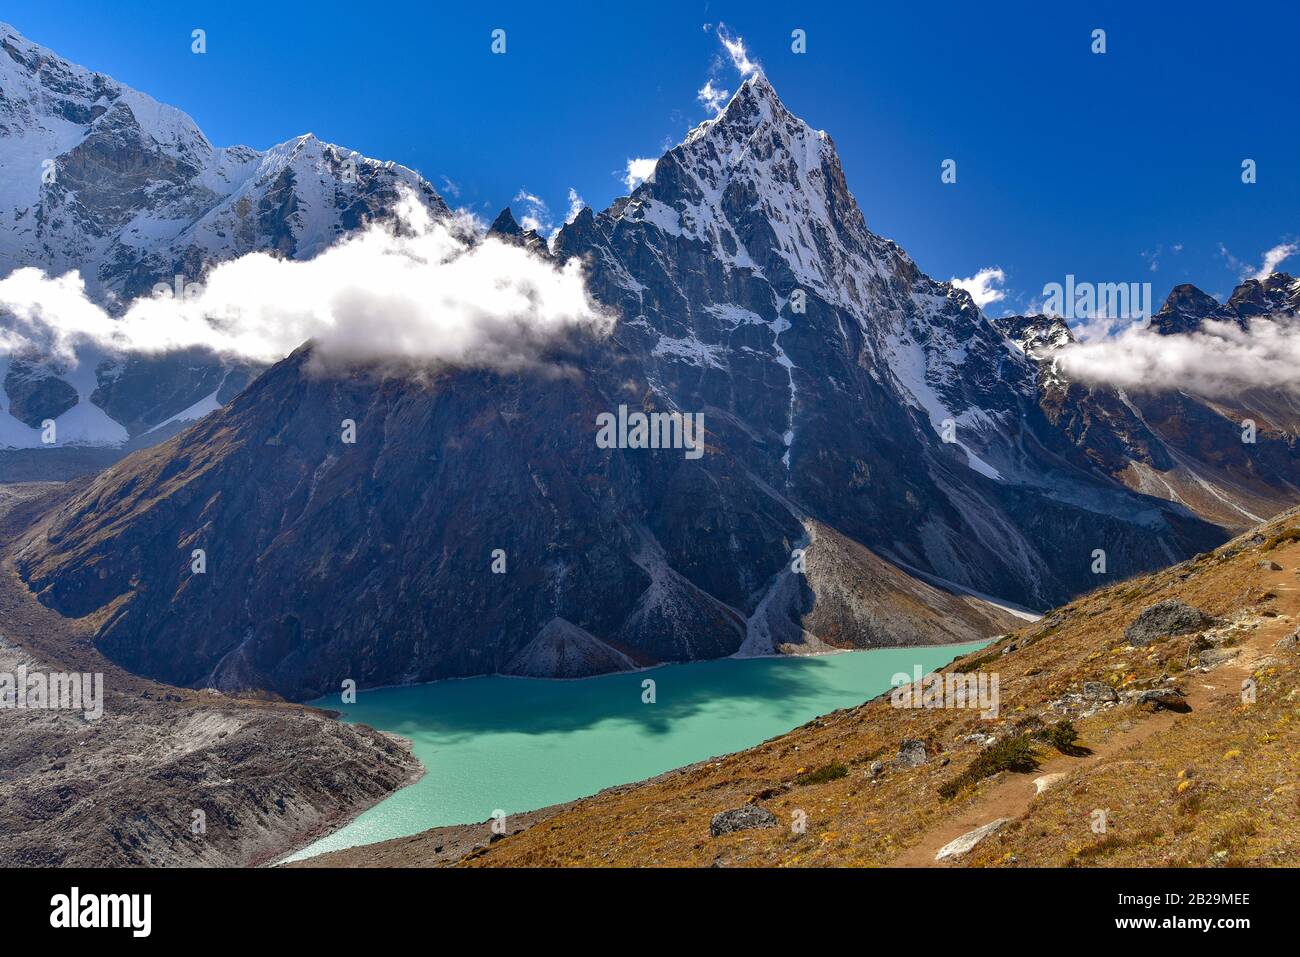 Lac entouré de montagnes enneigées de l'Himalaya au Népal Banque D'Images